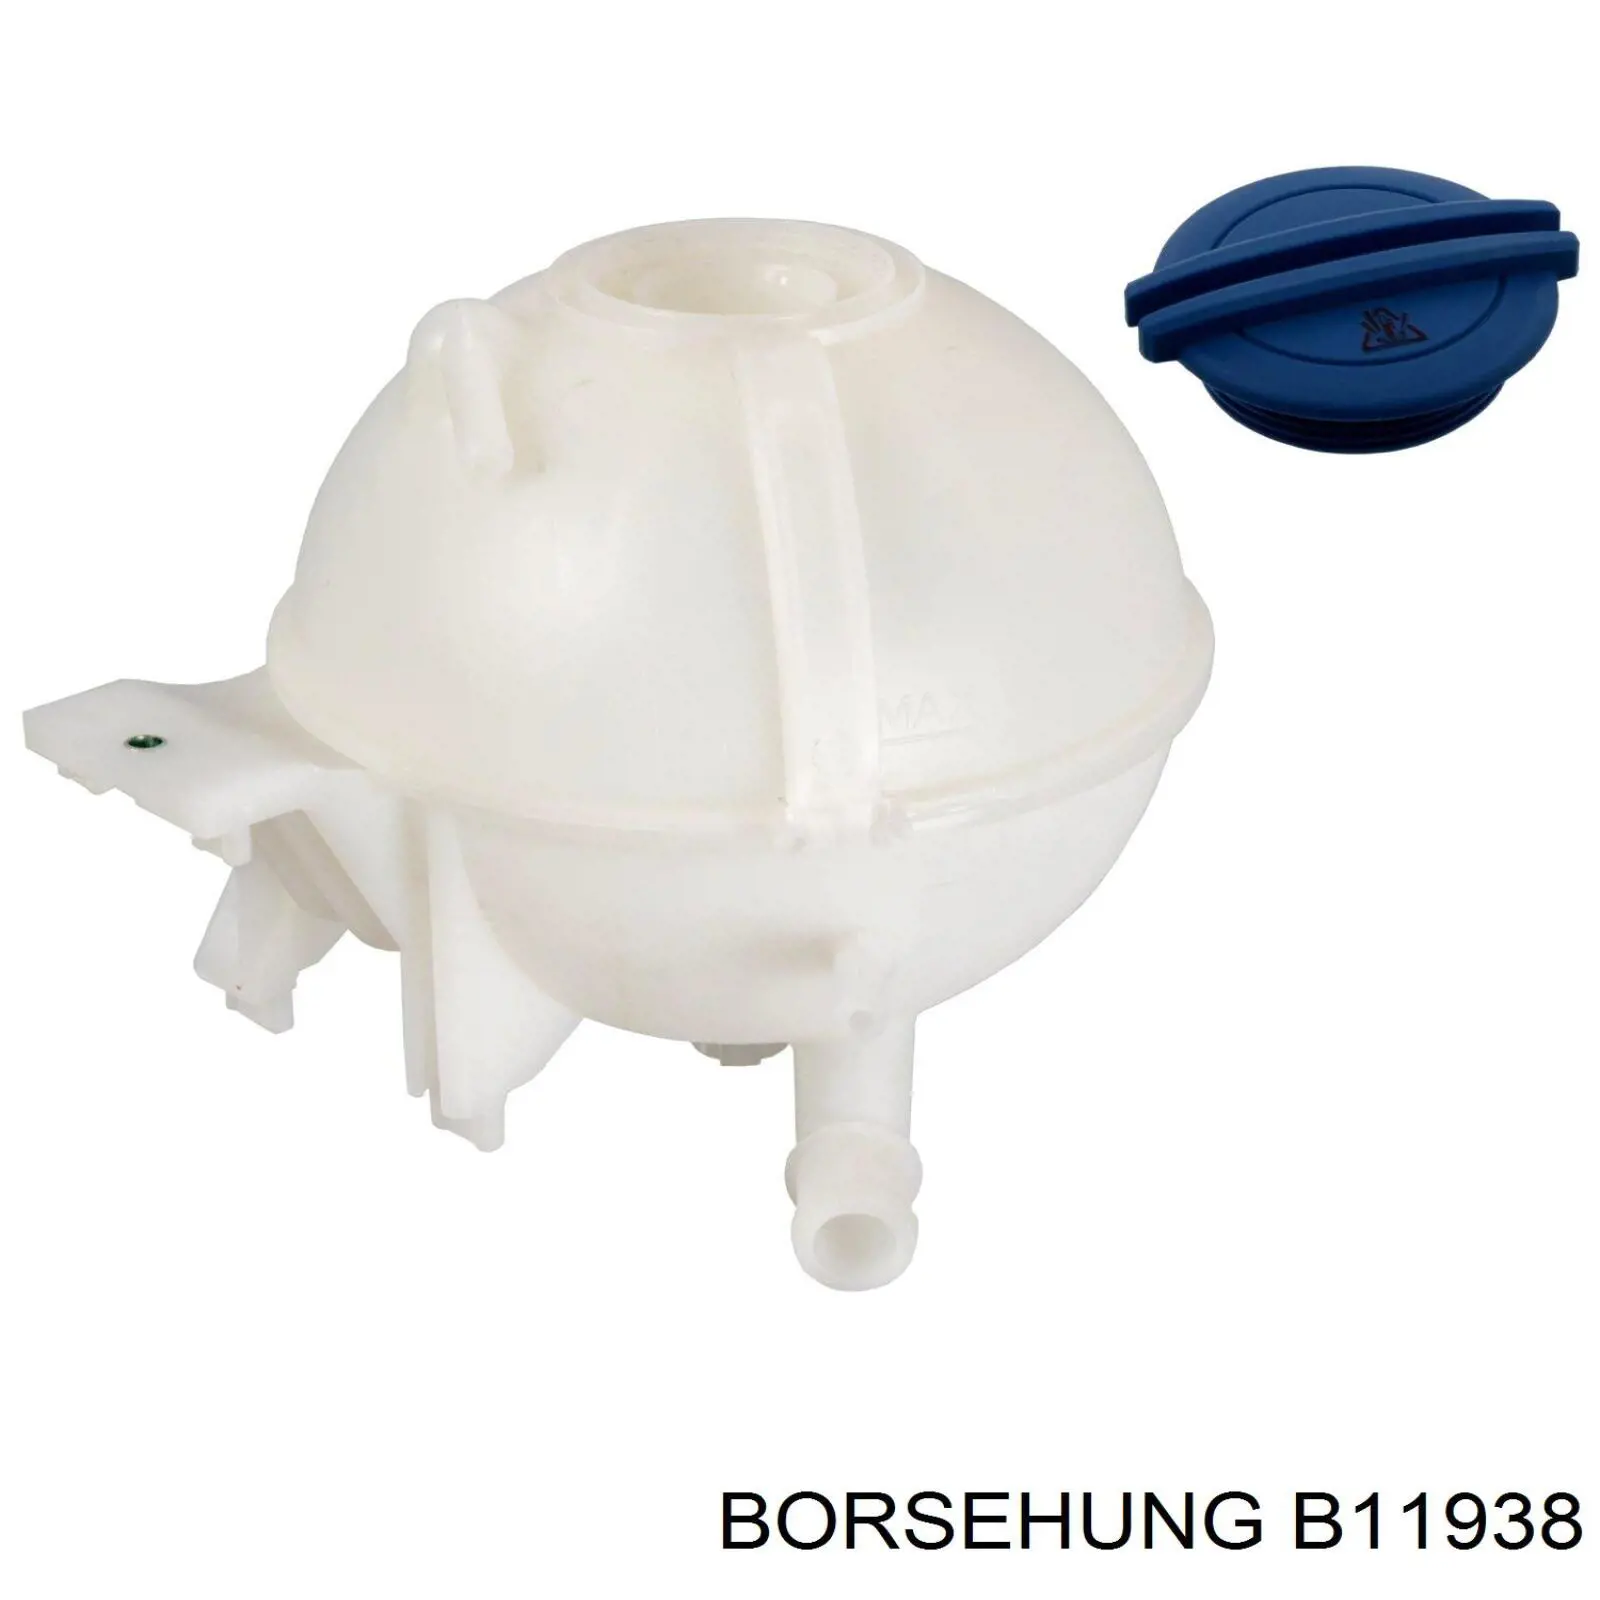 B11938 Borsehung vaso de expansión